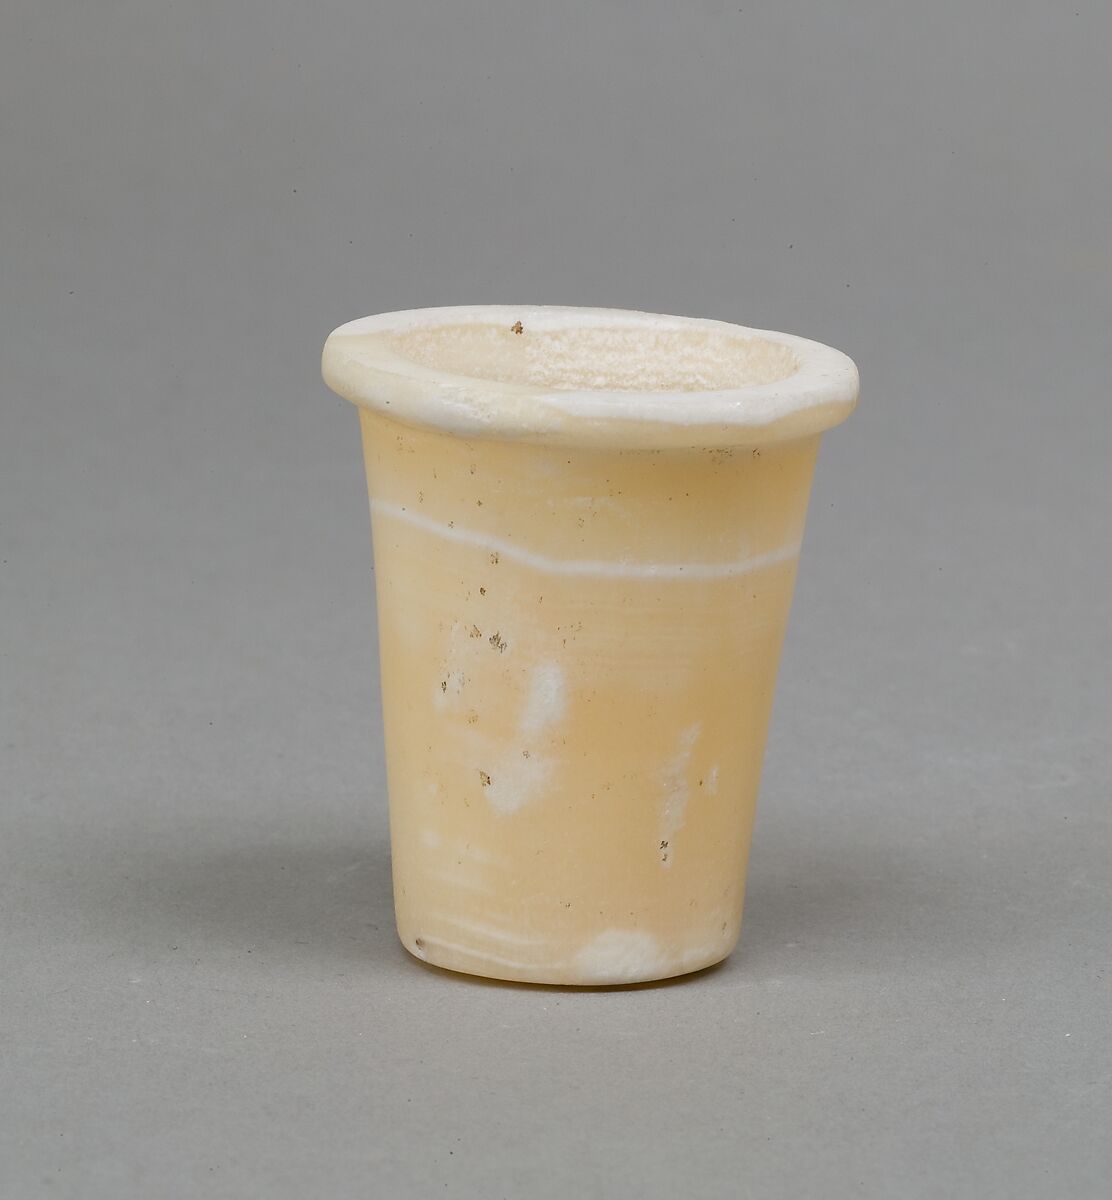 Senwosret (?), Oil jar, Travertine (Egyptian alabaster) 